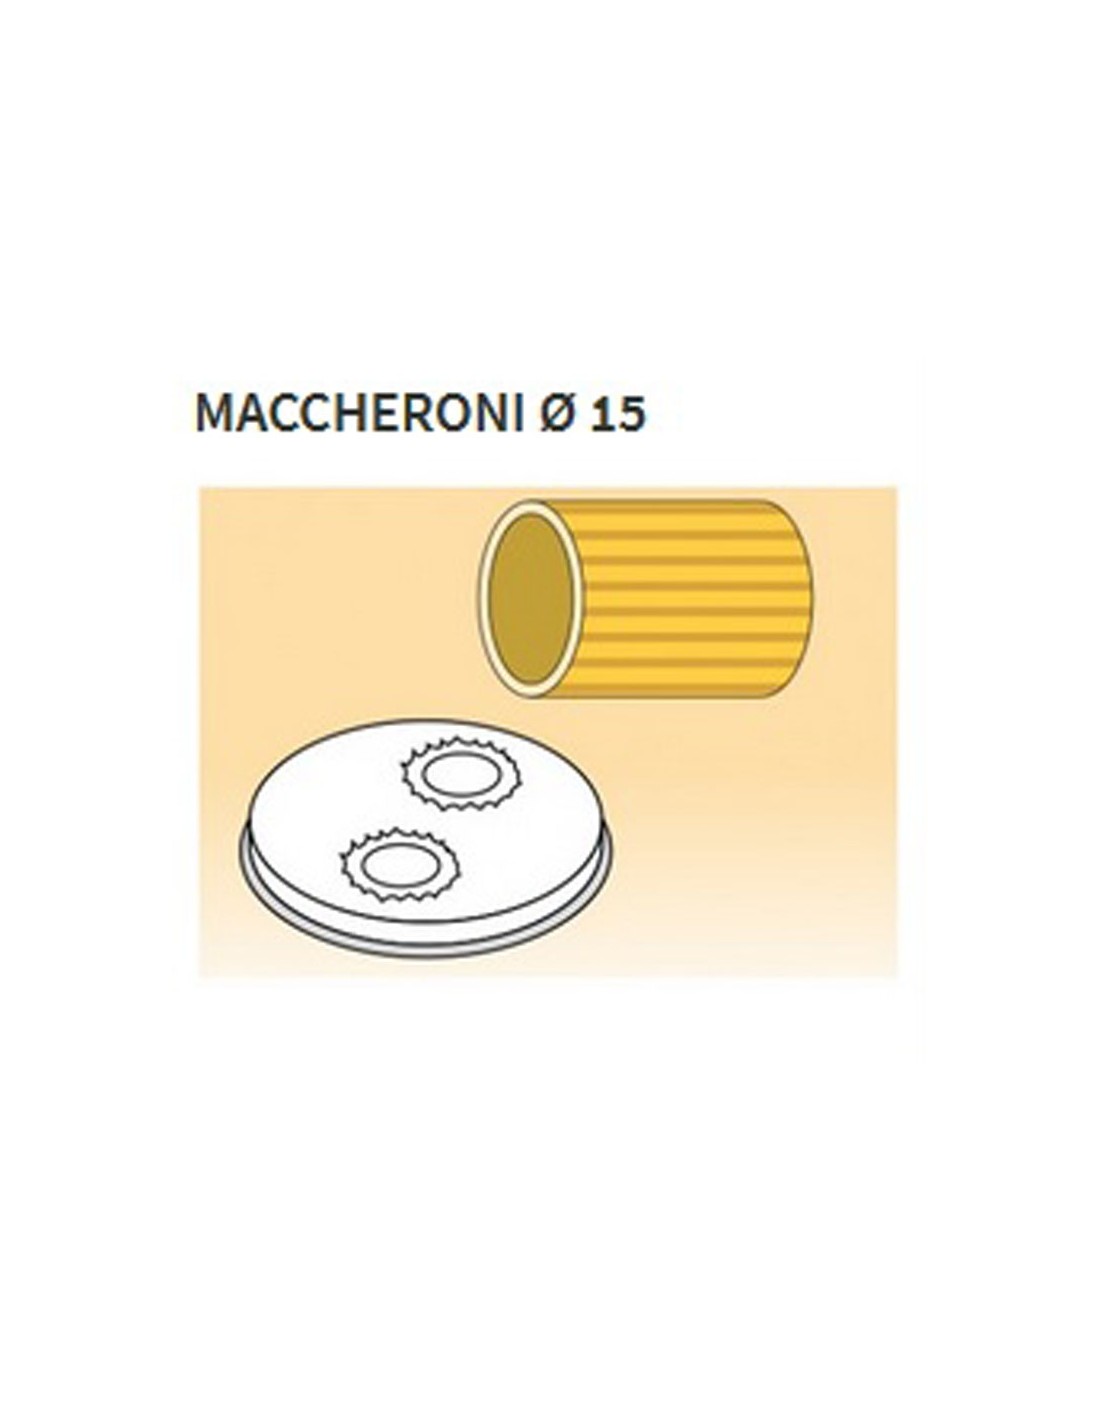 Matrices de aleación de latón de varias formas - Bronce - Para máquina de pasta fresca modelo MPF15 - Maccheroni Ø mm 15